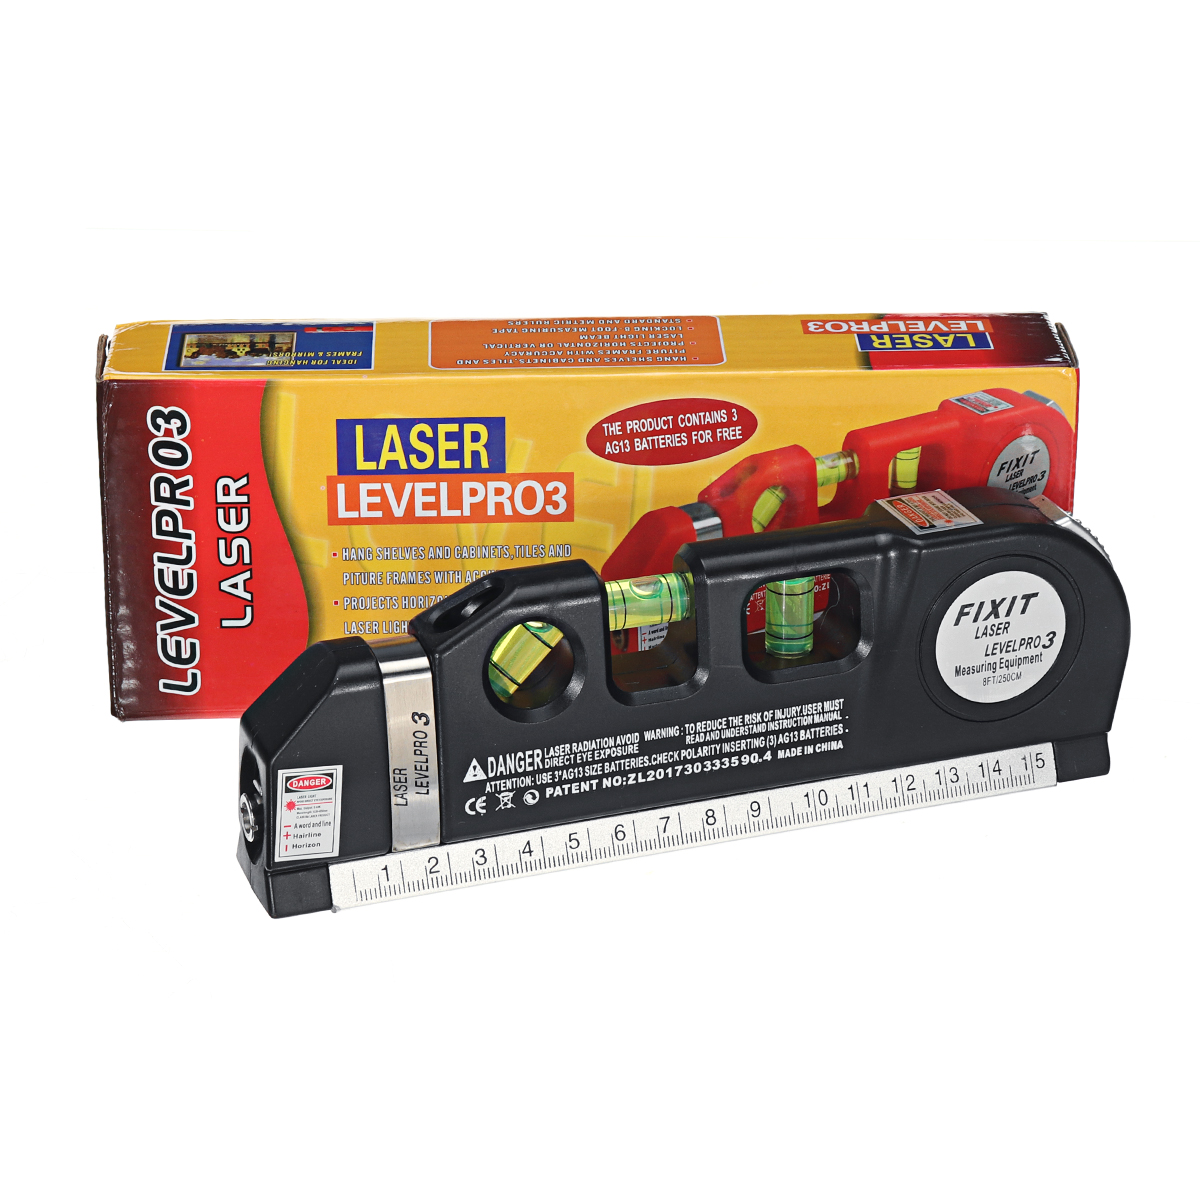 Multipurpose-Laser-Level-Vertical-Cross-Measuring-Tape-Aligner-Metric-Ruler-1628827-10